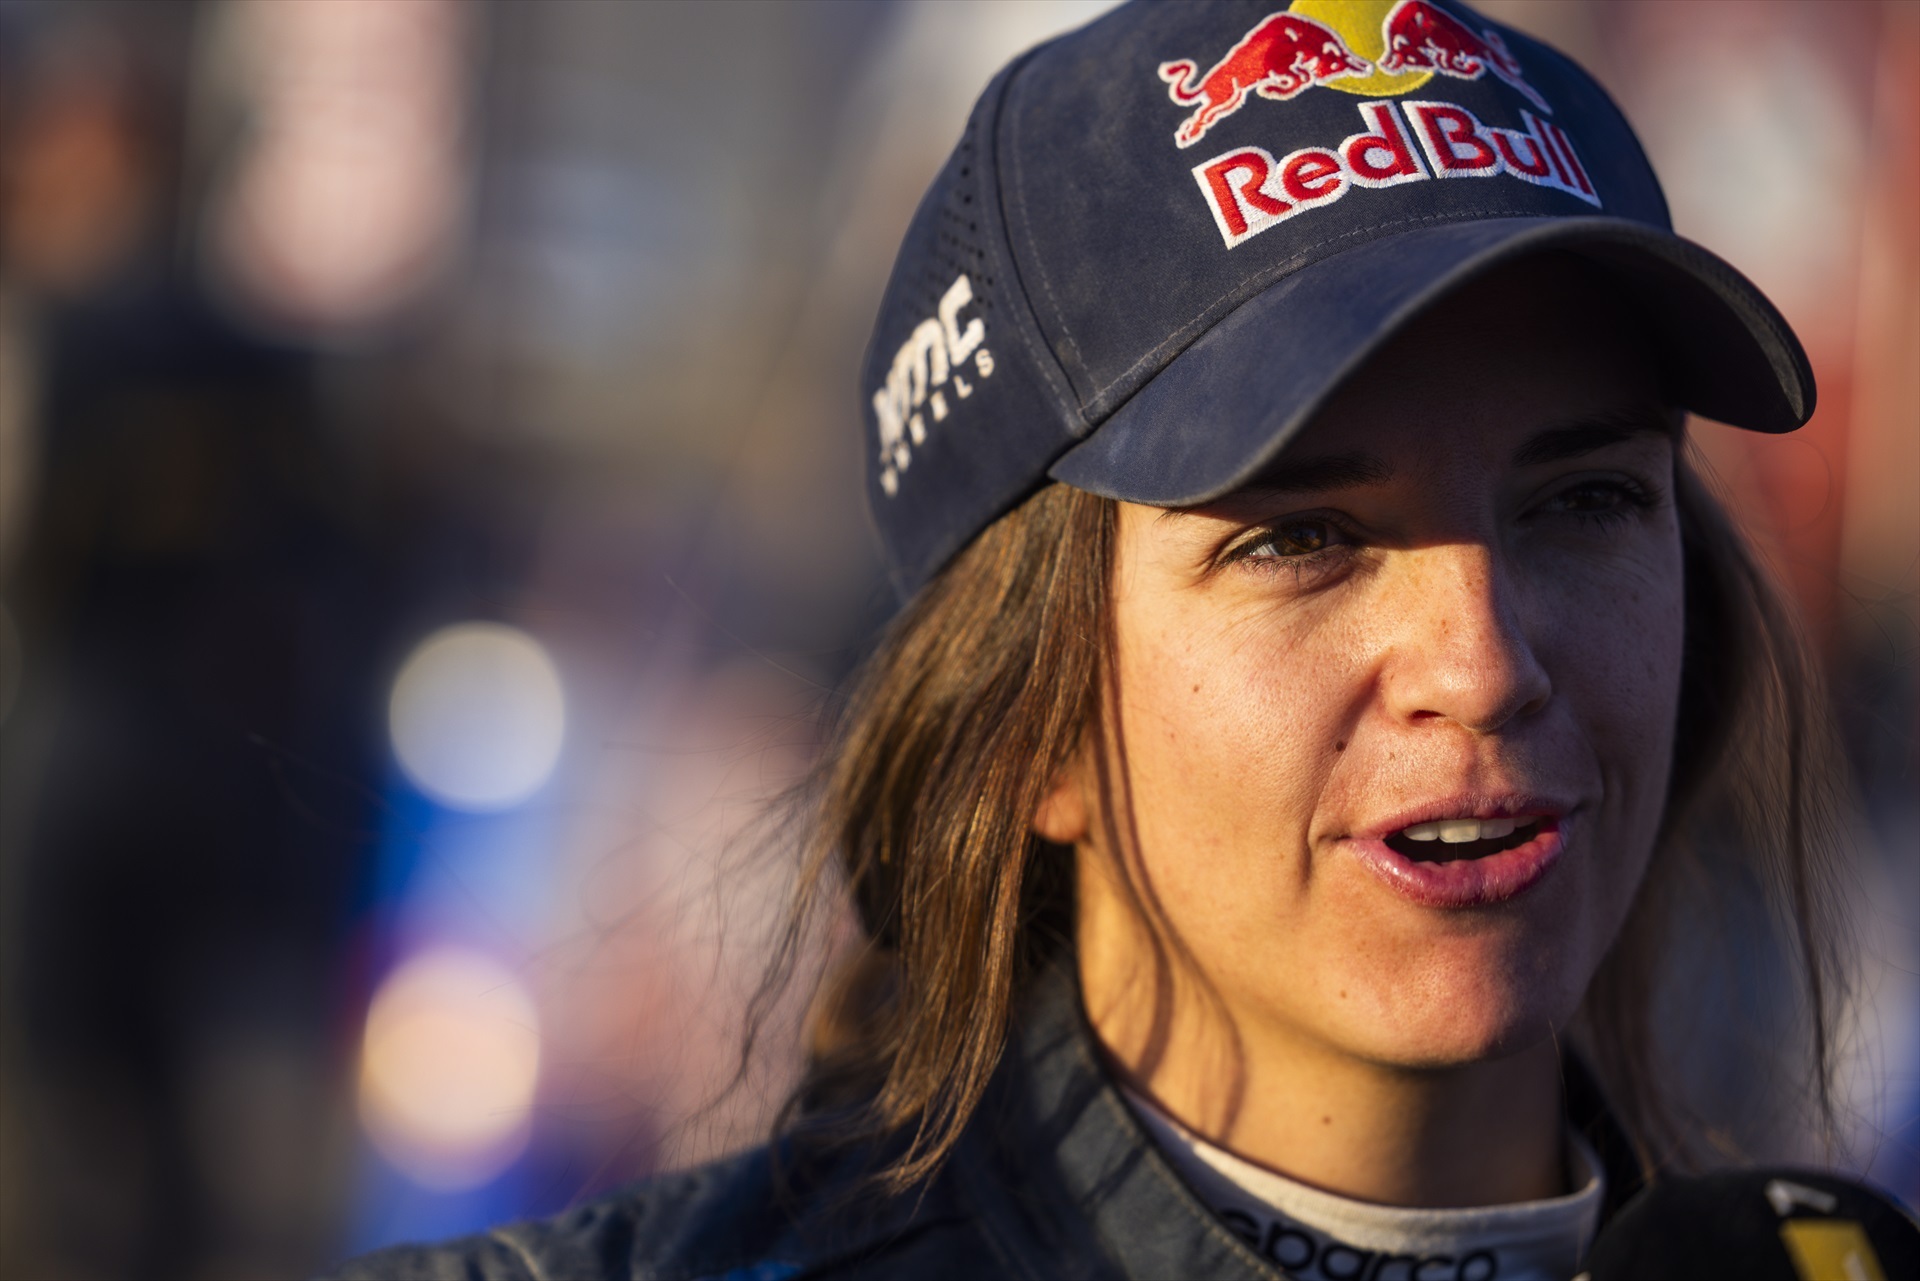 Cristina Gutiérrez fa història i es converteix en la primera dona espanyola en guanyar el Dakar